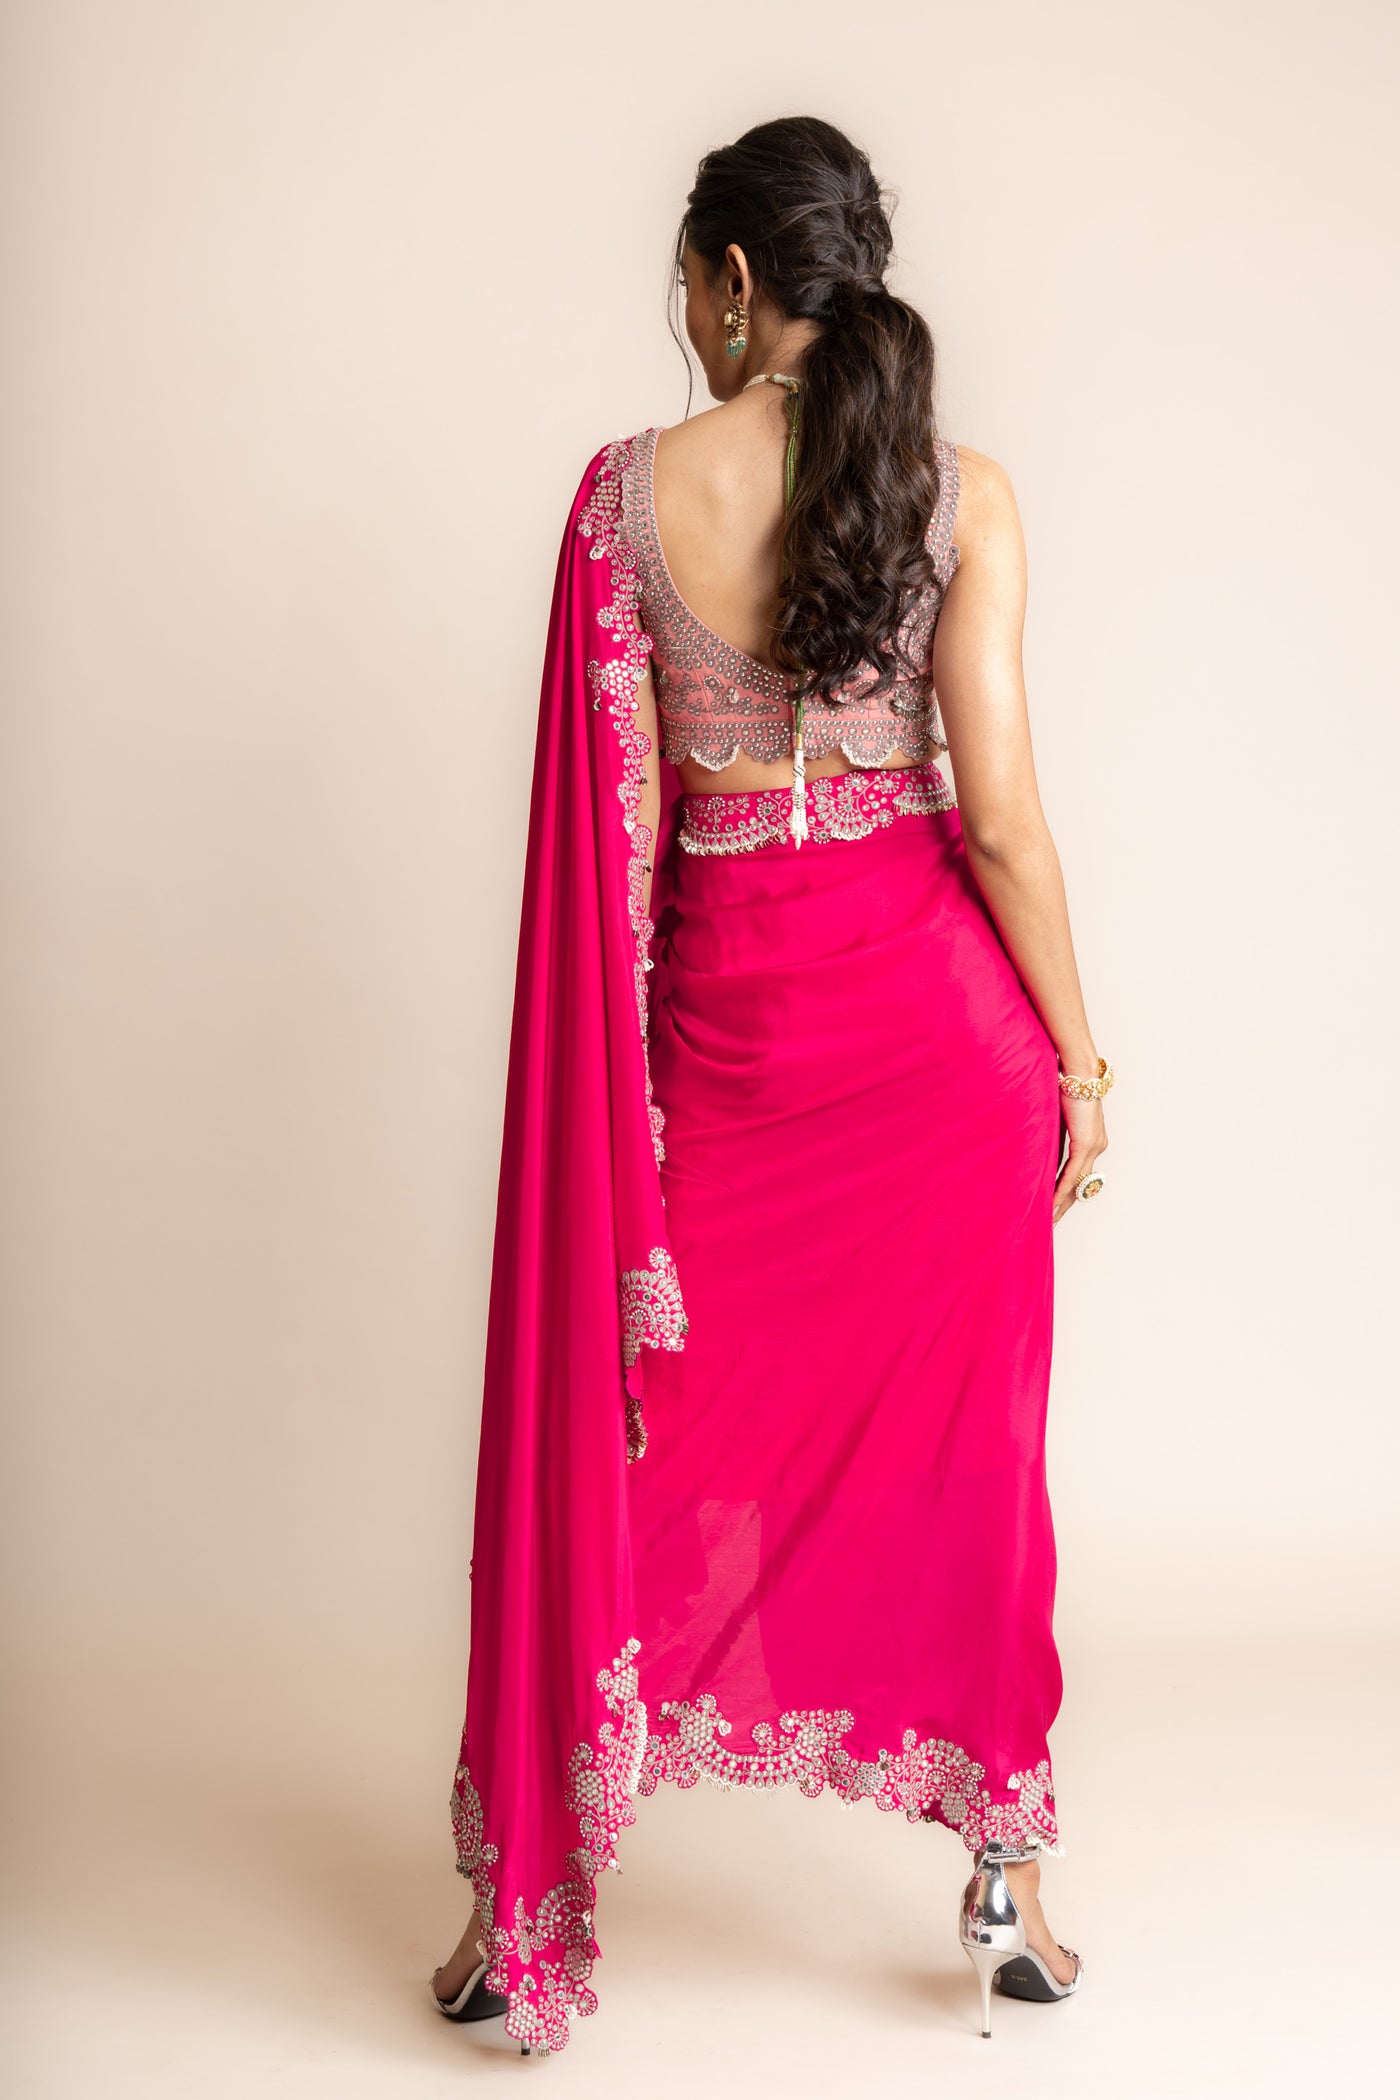 Nupur Kanoi Pre Draped Sari Set indian designer wear online shopping melange singapore